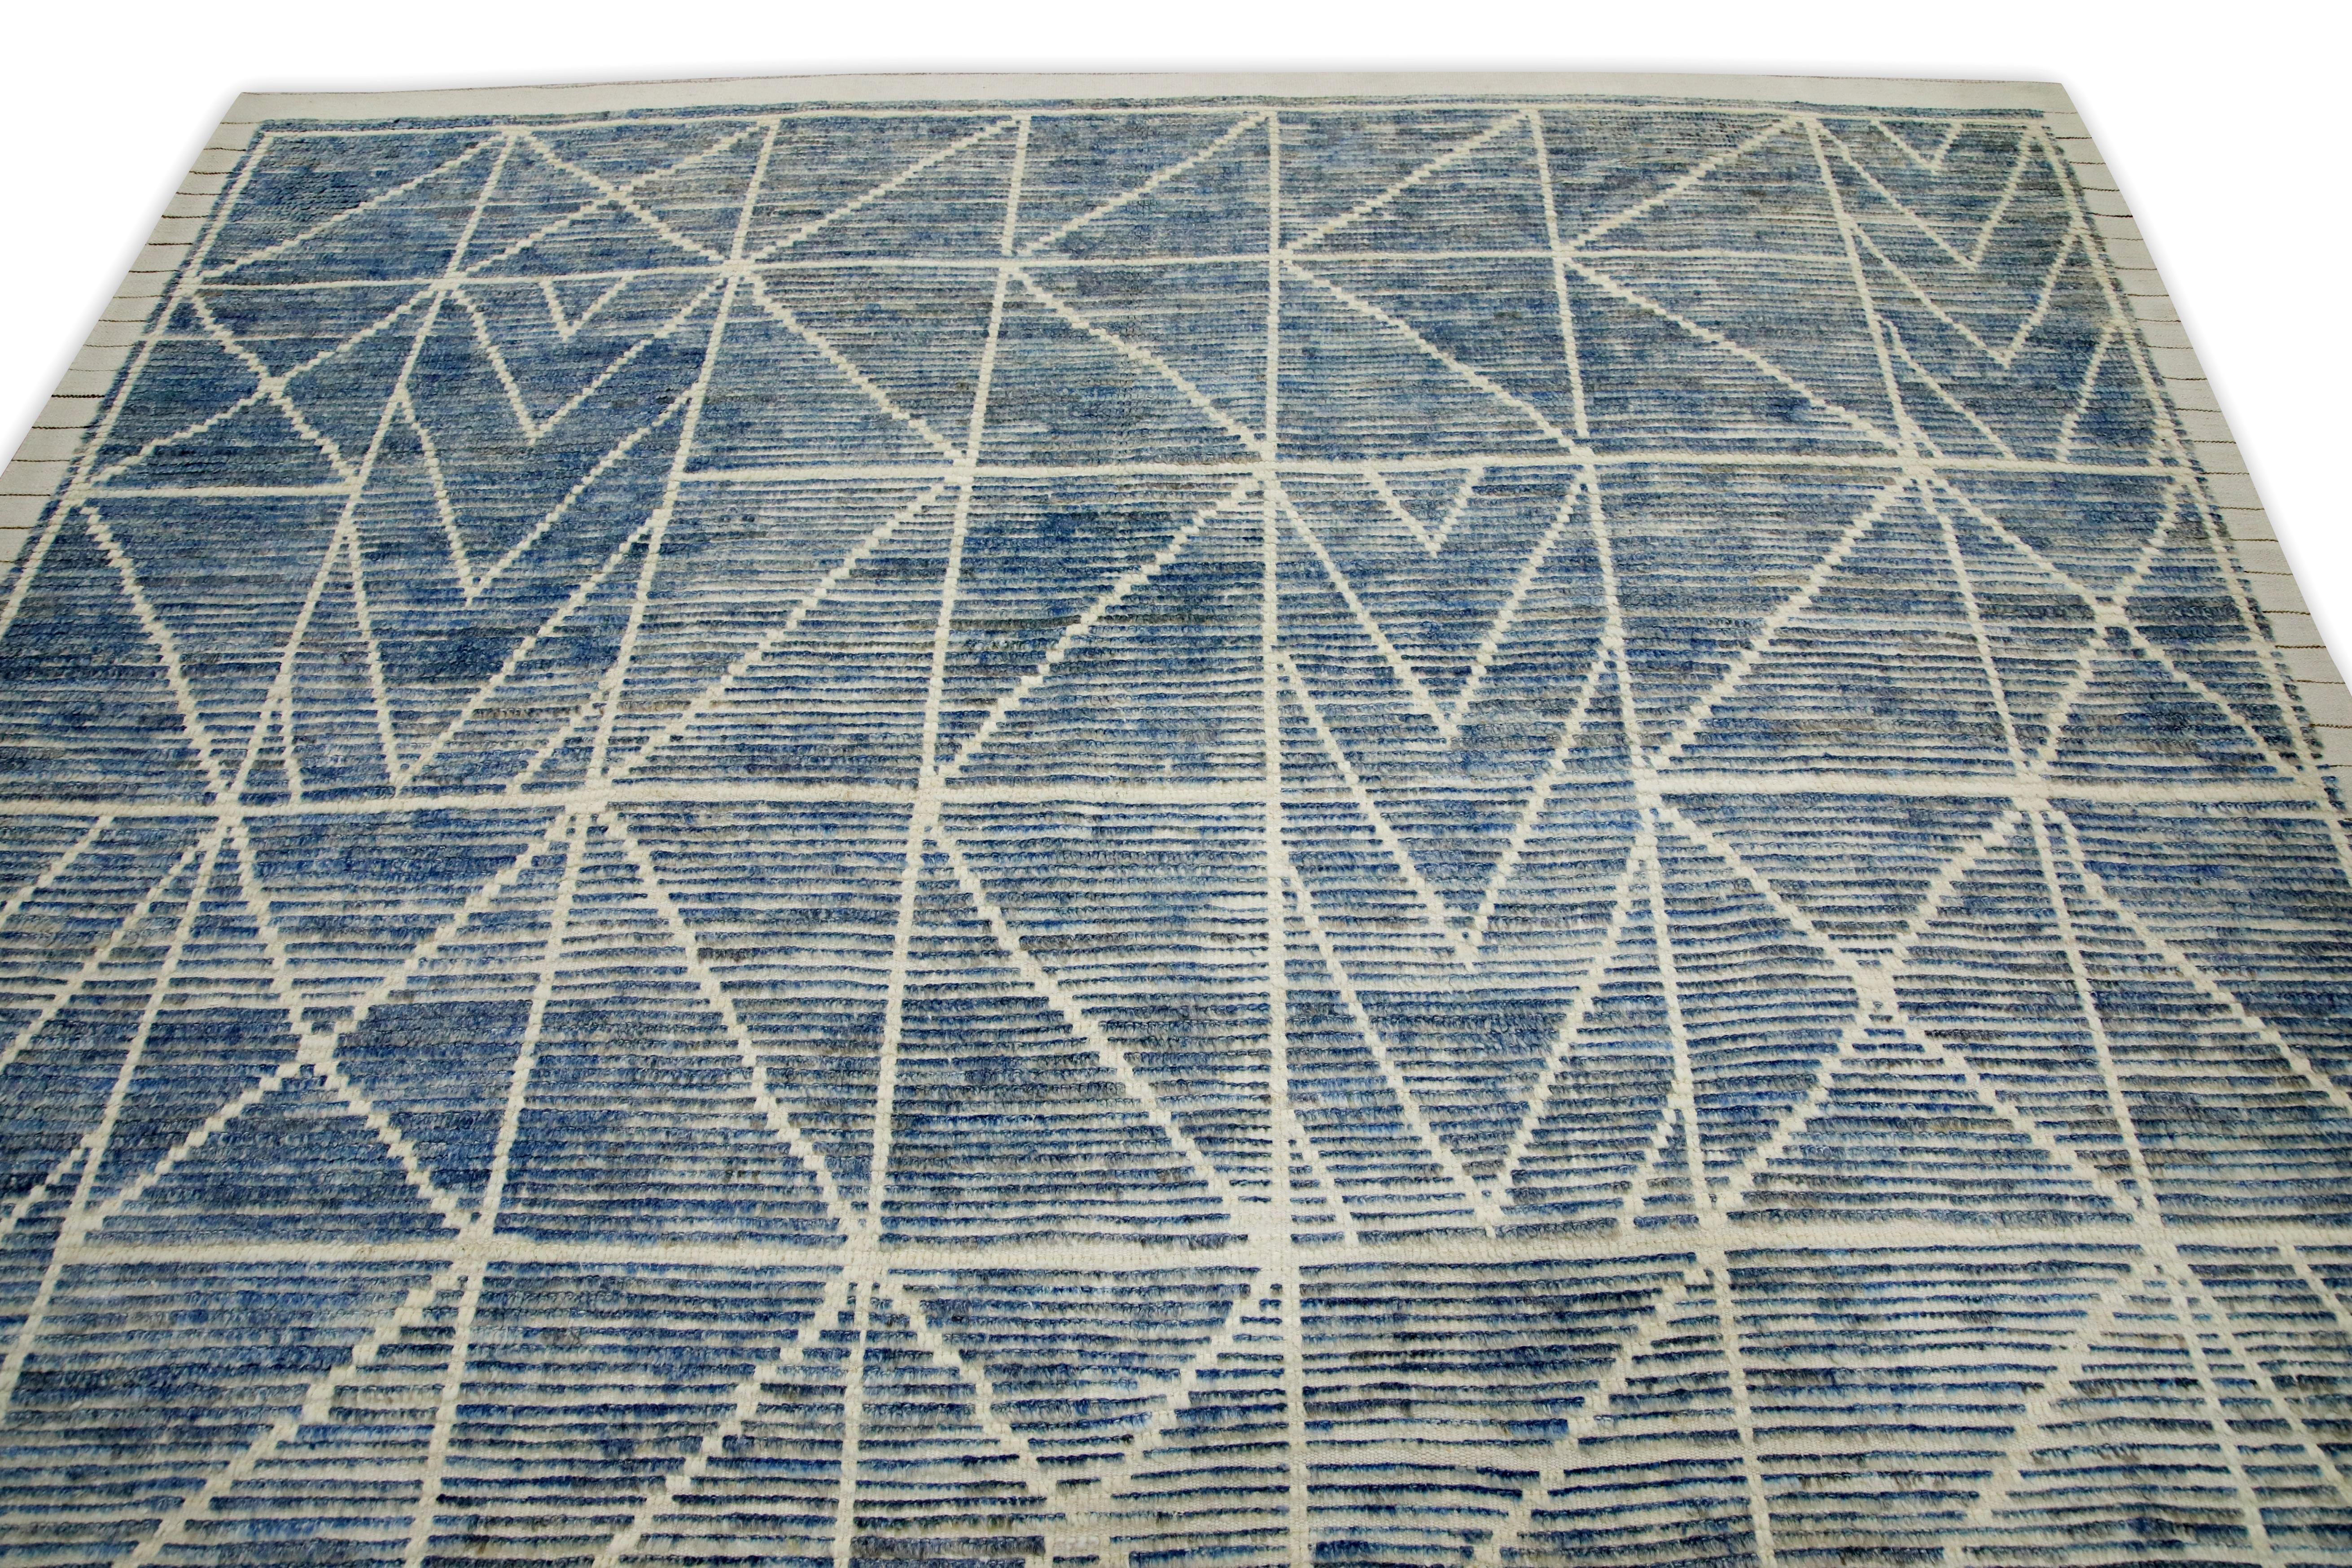 Turkish Blue Handmade Wool Tulu Rug in Geometric Design 7'11